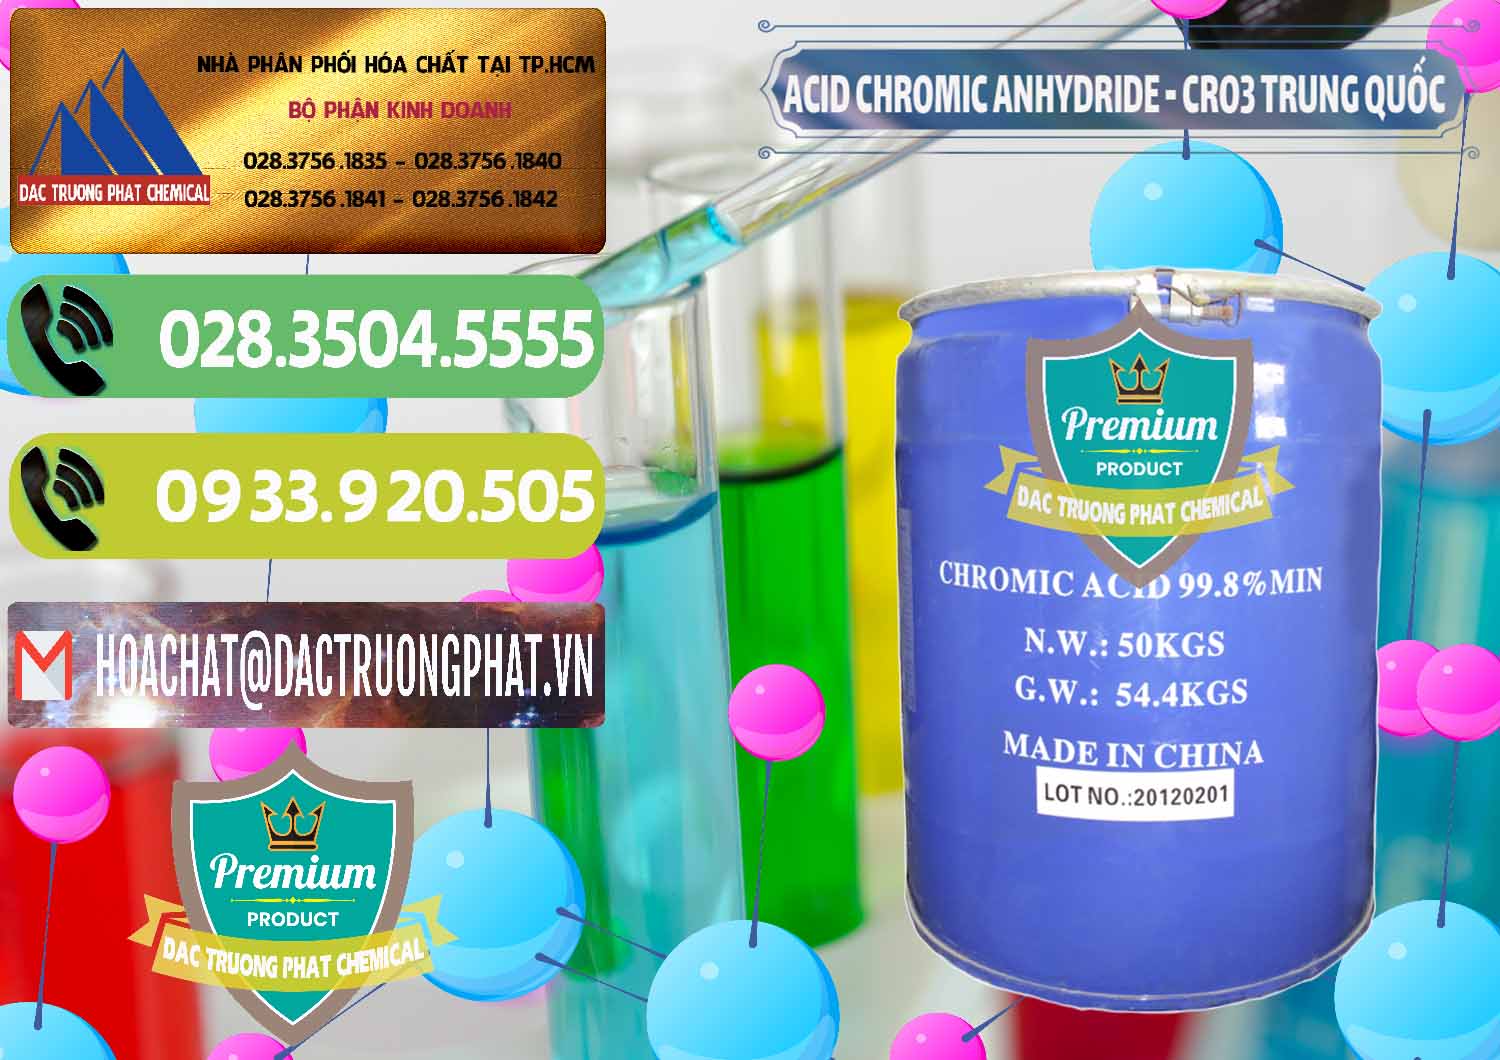 Cty chuyên kinh doanh & bán Acid Chromic Anhydride - Cromic CRO3 Trung Quốc China - 0007 - Công ty kinh doanh và phân phối hóa chất tại TP.HCM - hoachatmientay.vn